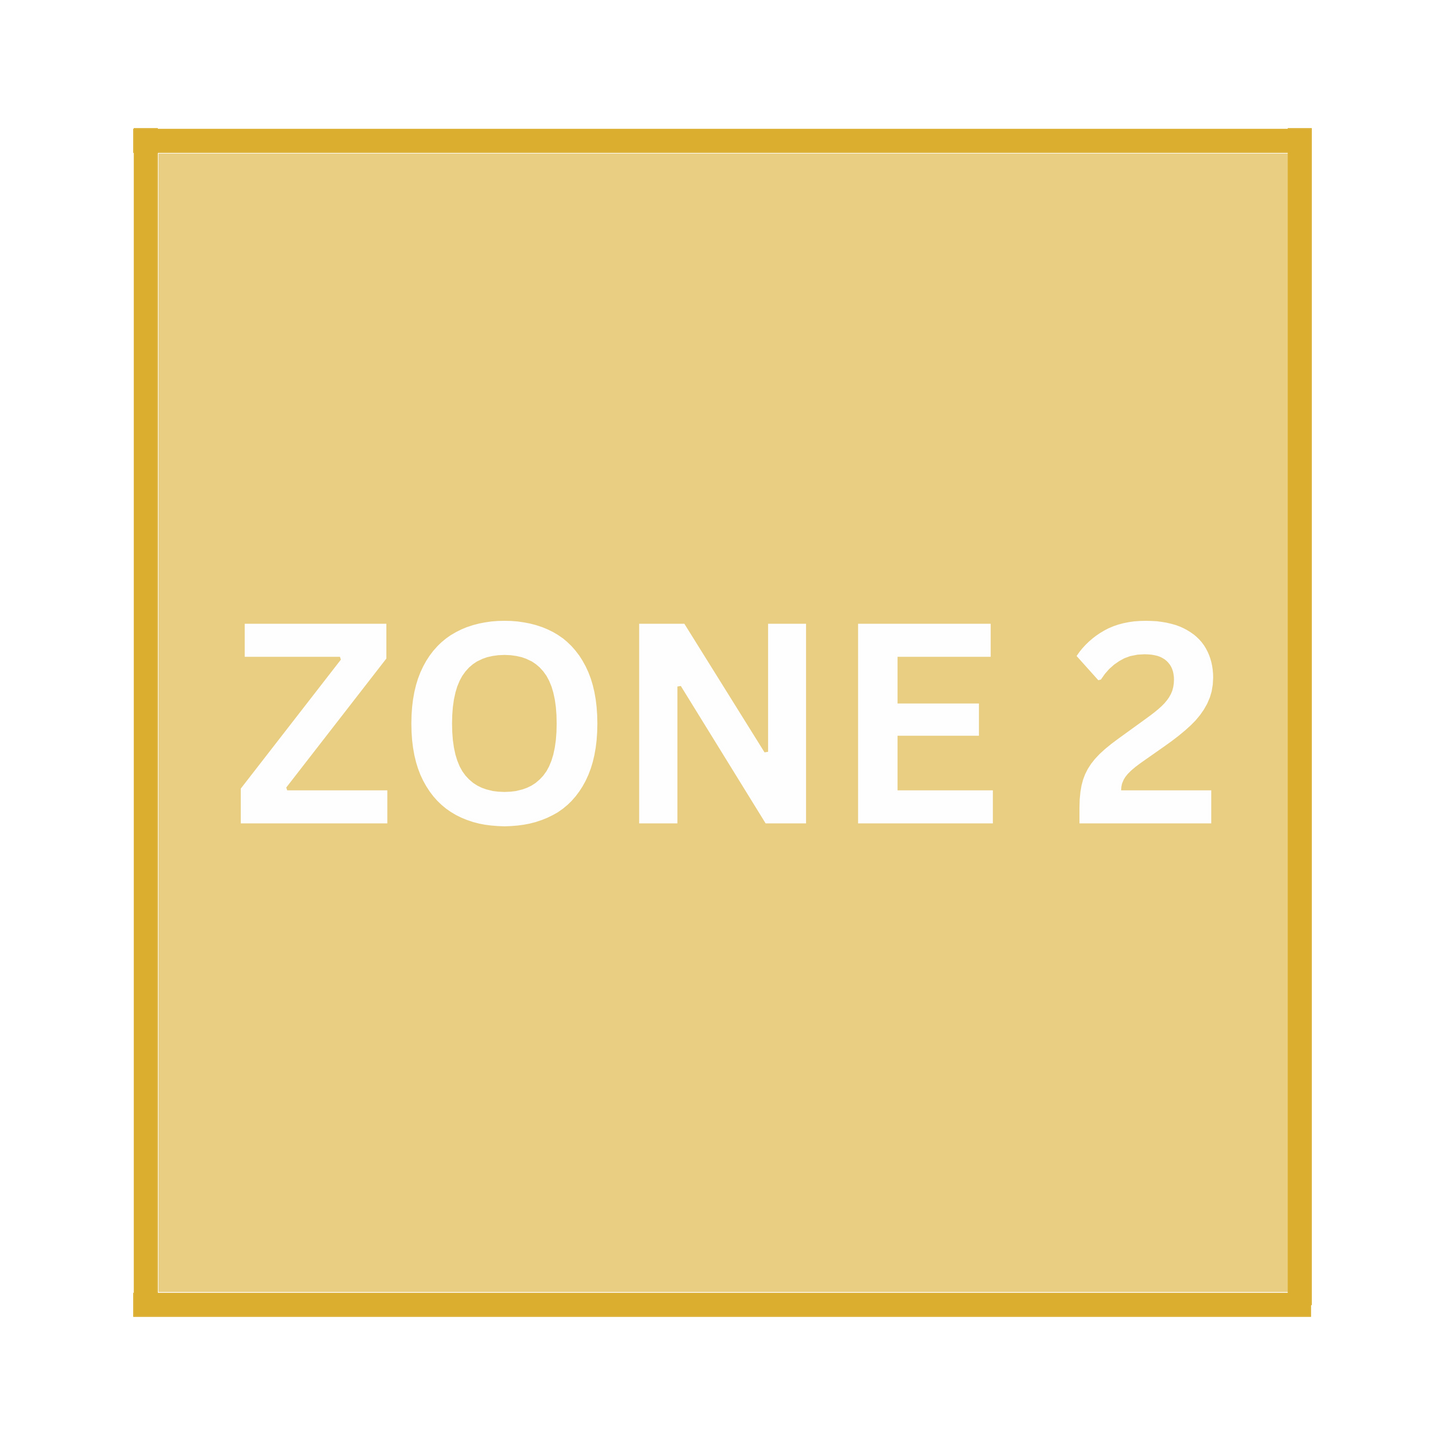 Zone 2 - BYOT